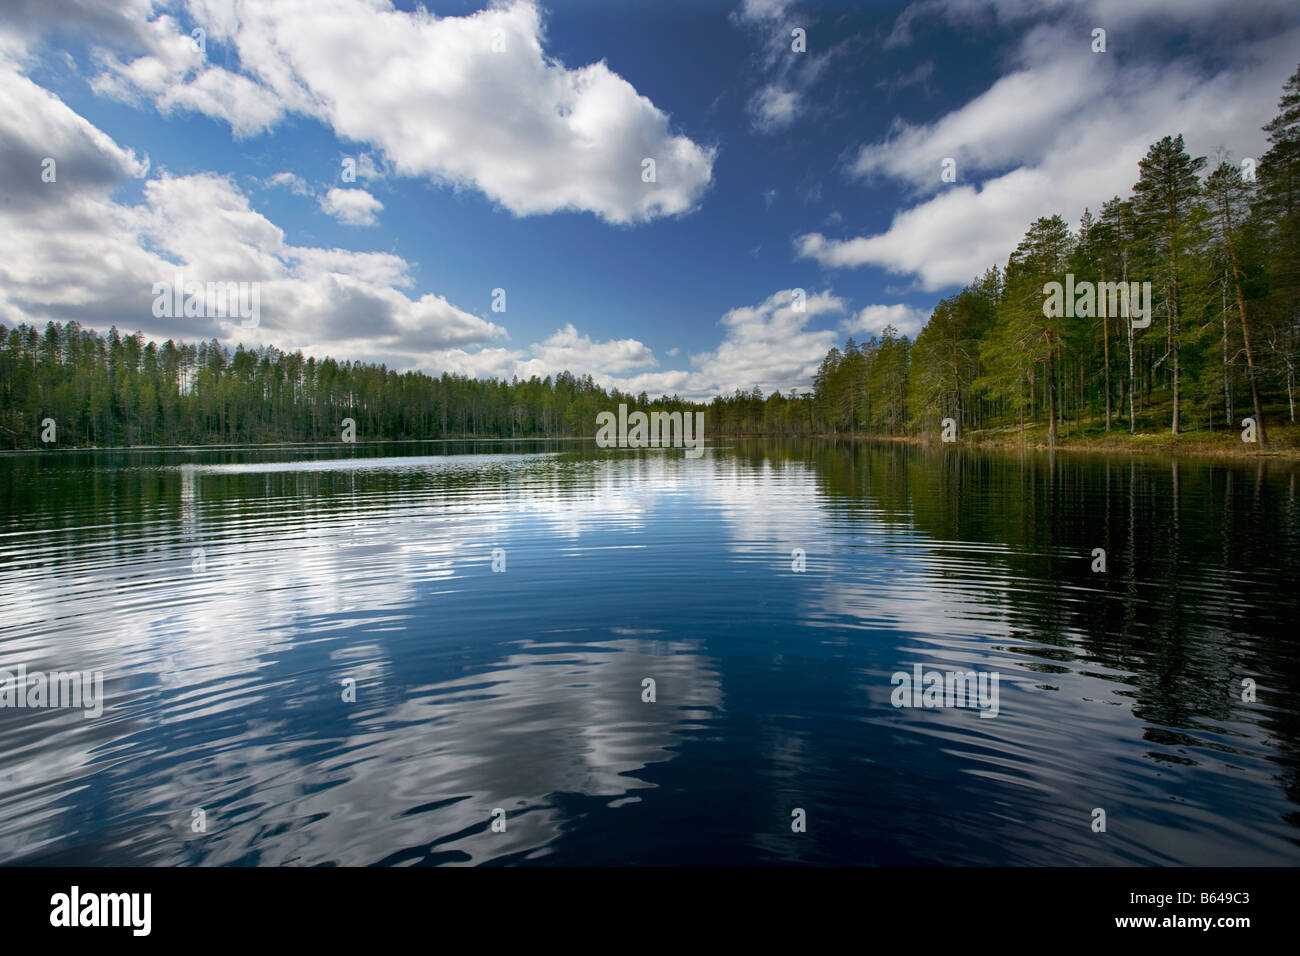 Finnland, Kuikka See, in der Nähe von Kuhmo. Arcticmedia. Bäume mit Spiegelbild im See Stockfoto